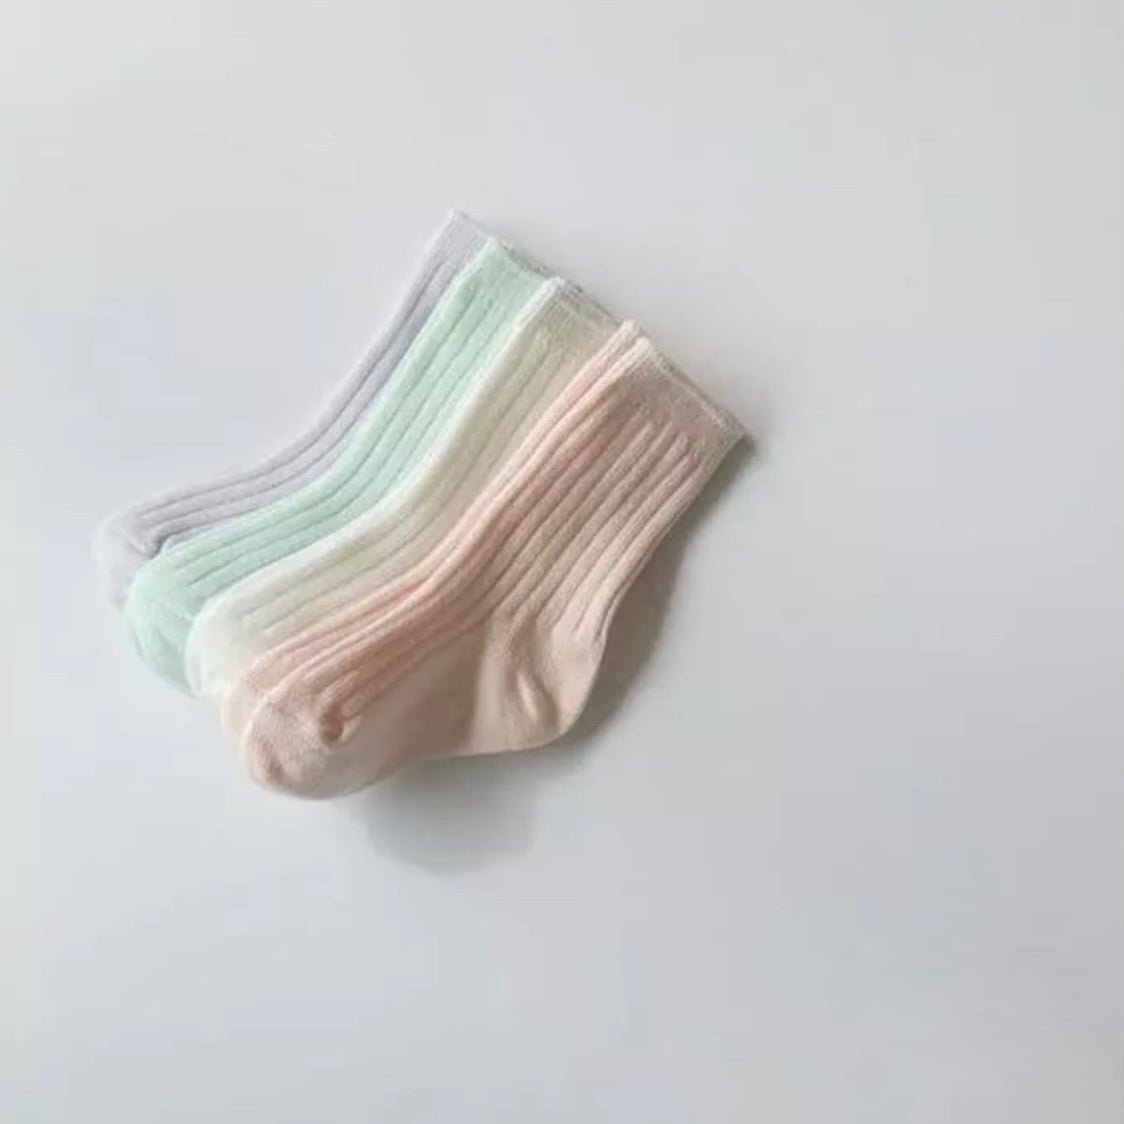 Shabel Socken (4er Set) find Stylish Fashion for Little People- at Little Foxx Concept Store